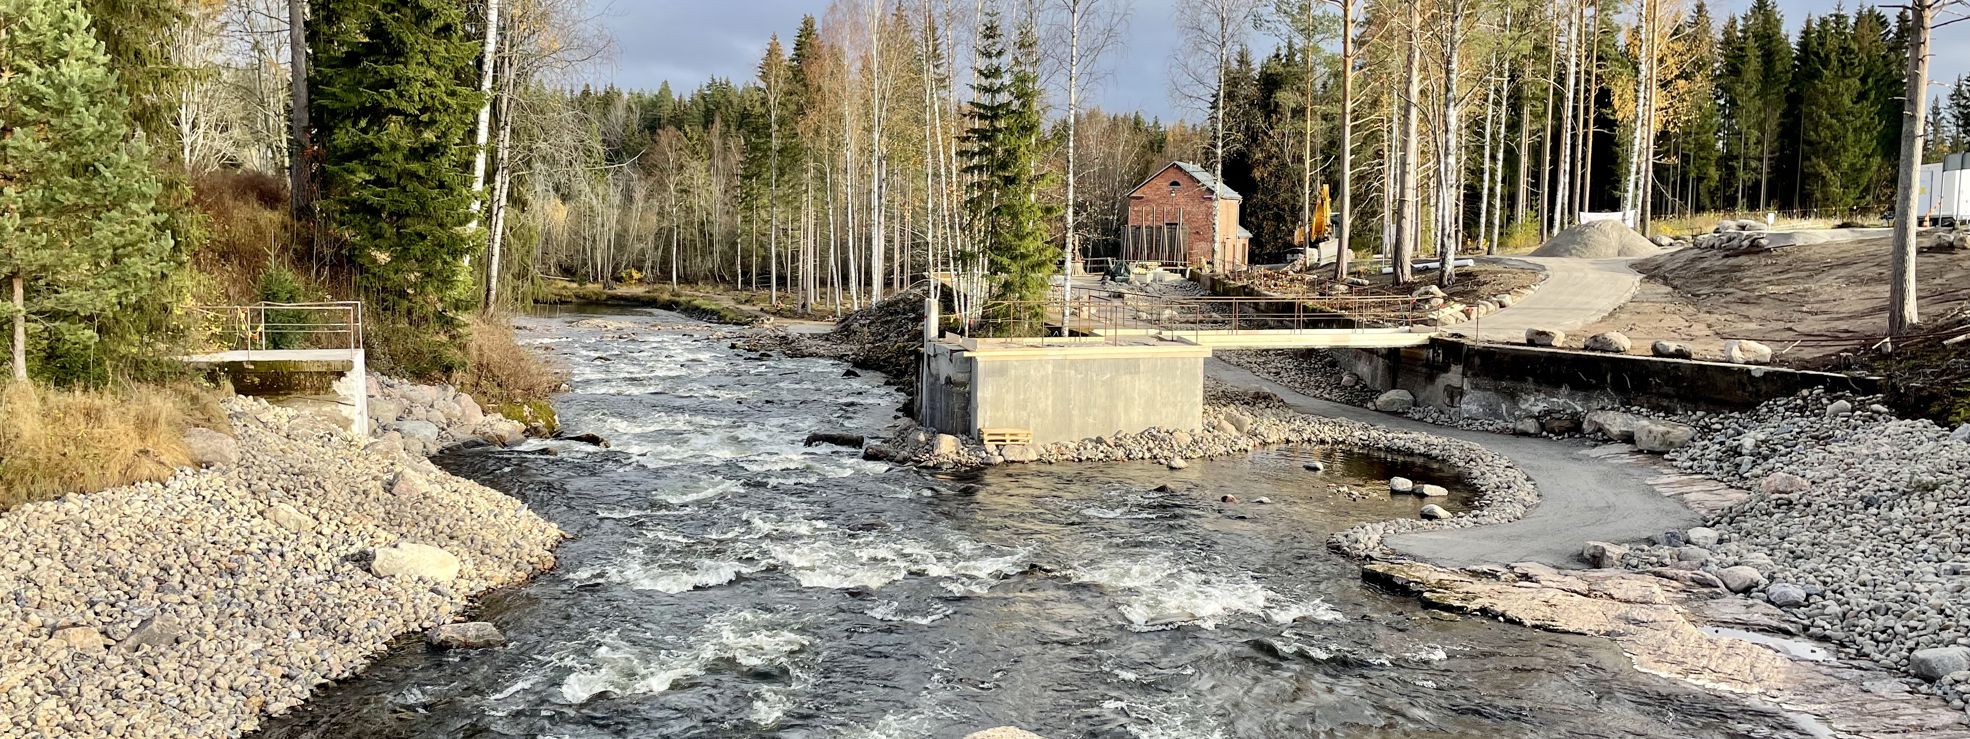 Metsä Group's funding will ensure the start of restoration work on the Lahnasenkoski section of the Hiitola River in the municipality of Rautjärvi.